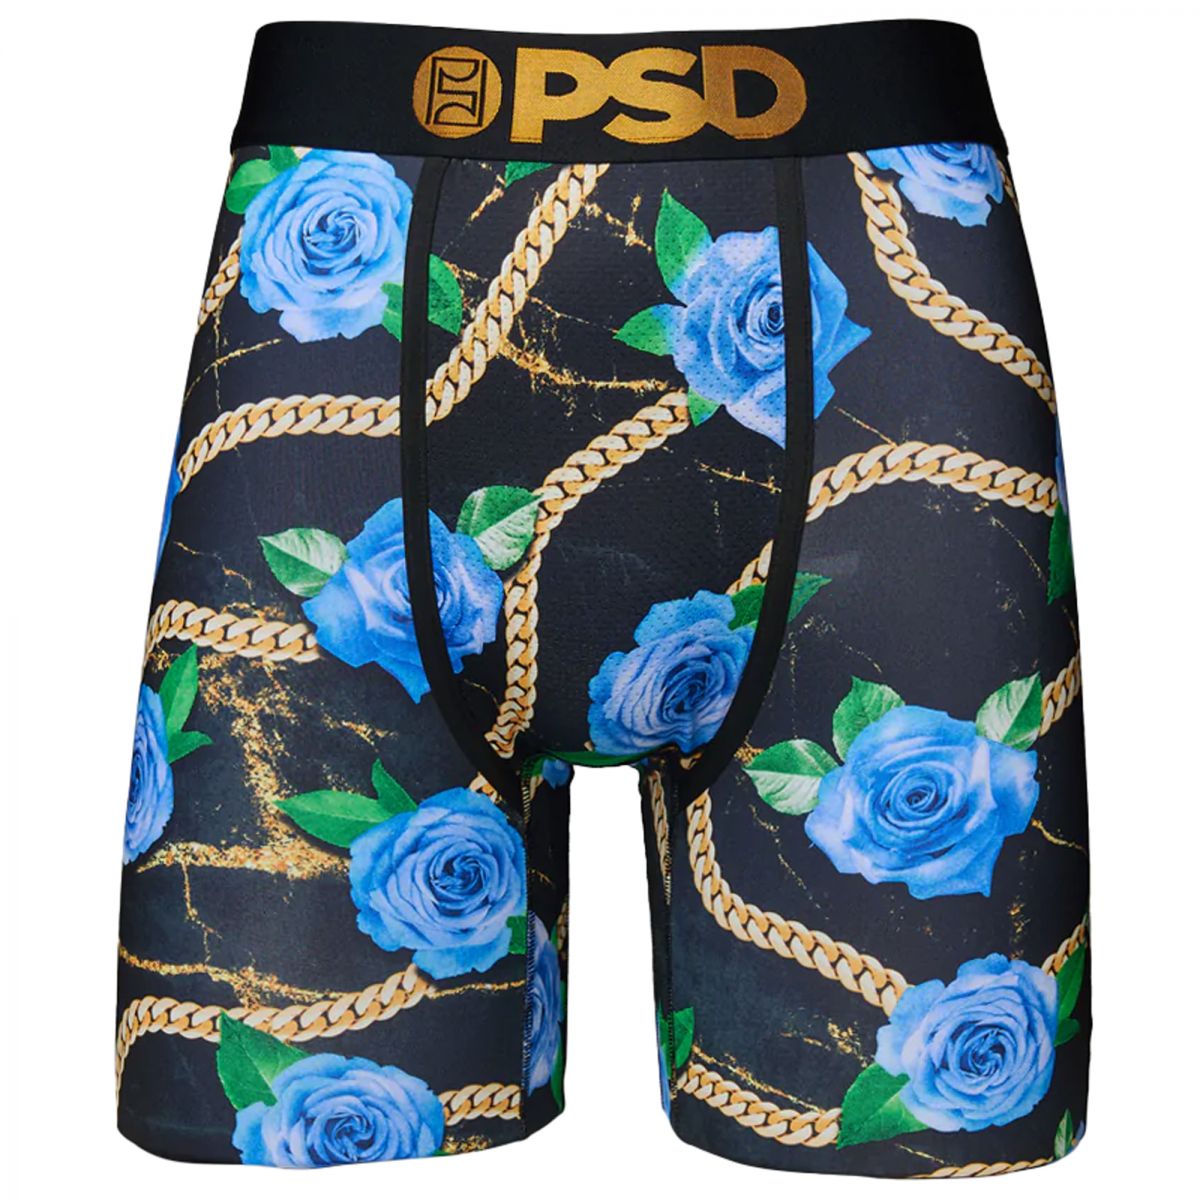 PSD Men's Brief Underwear Bottom (Black/Friends, S) 